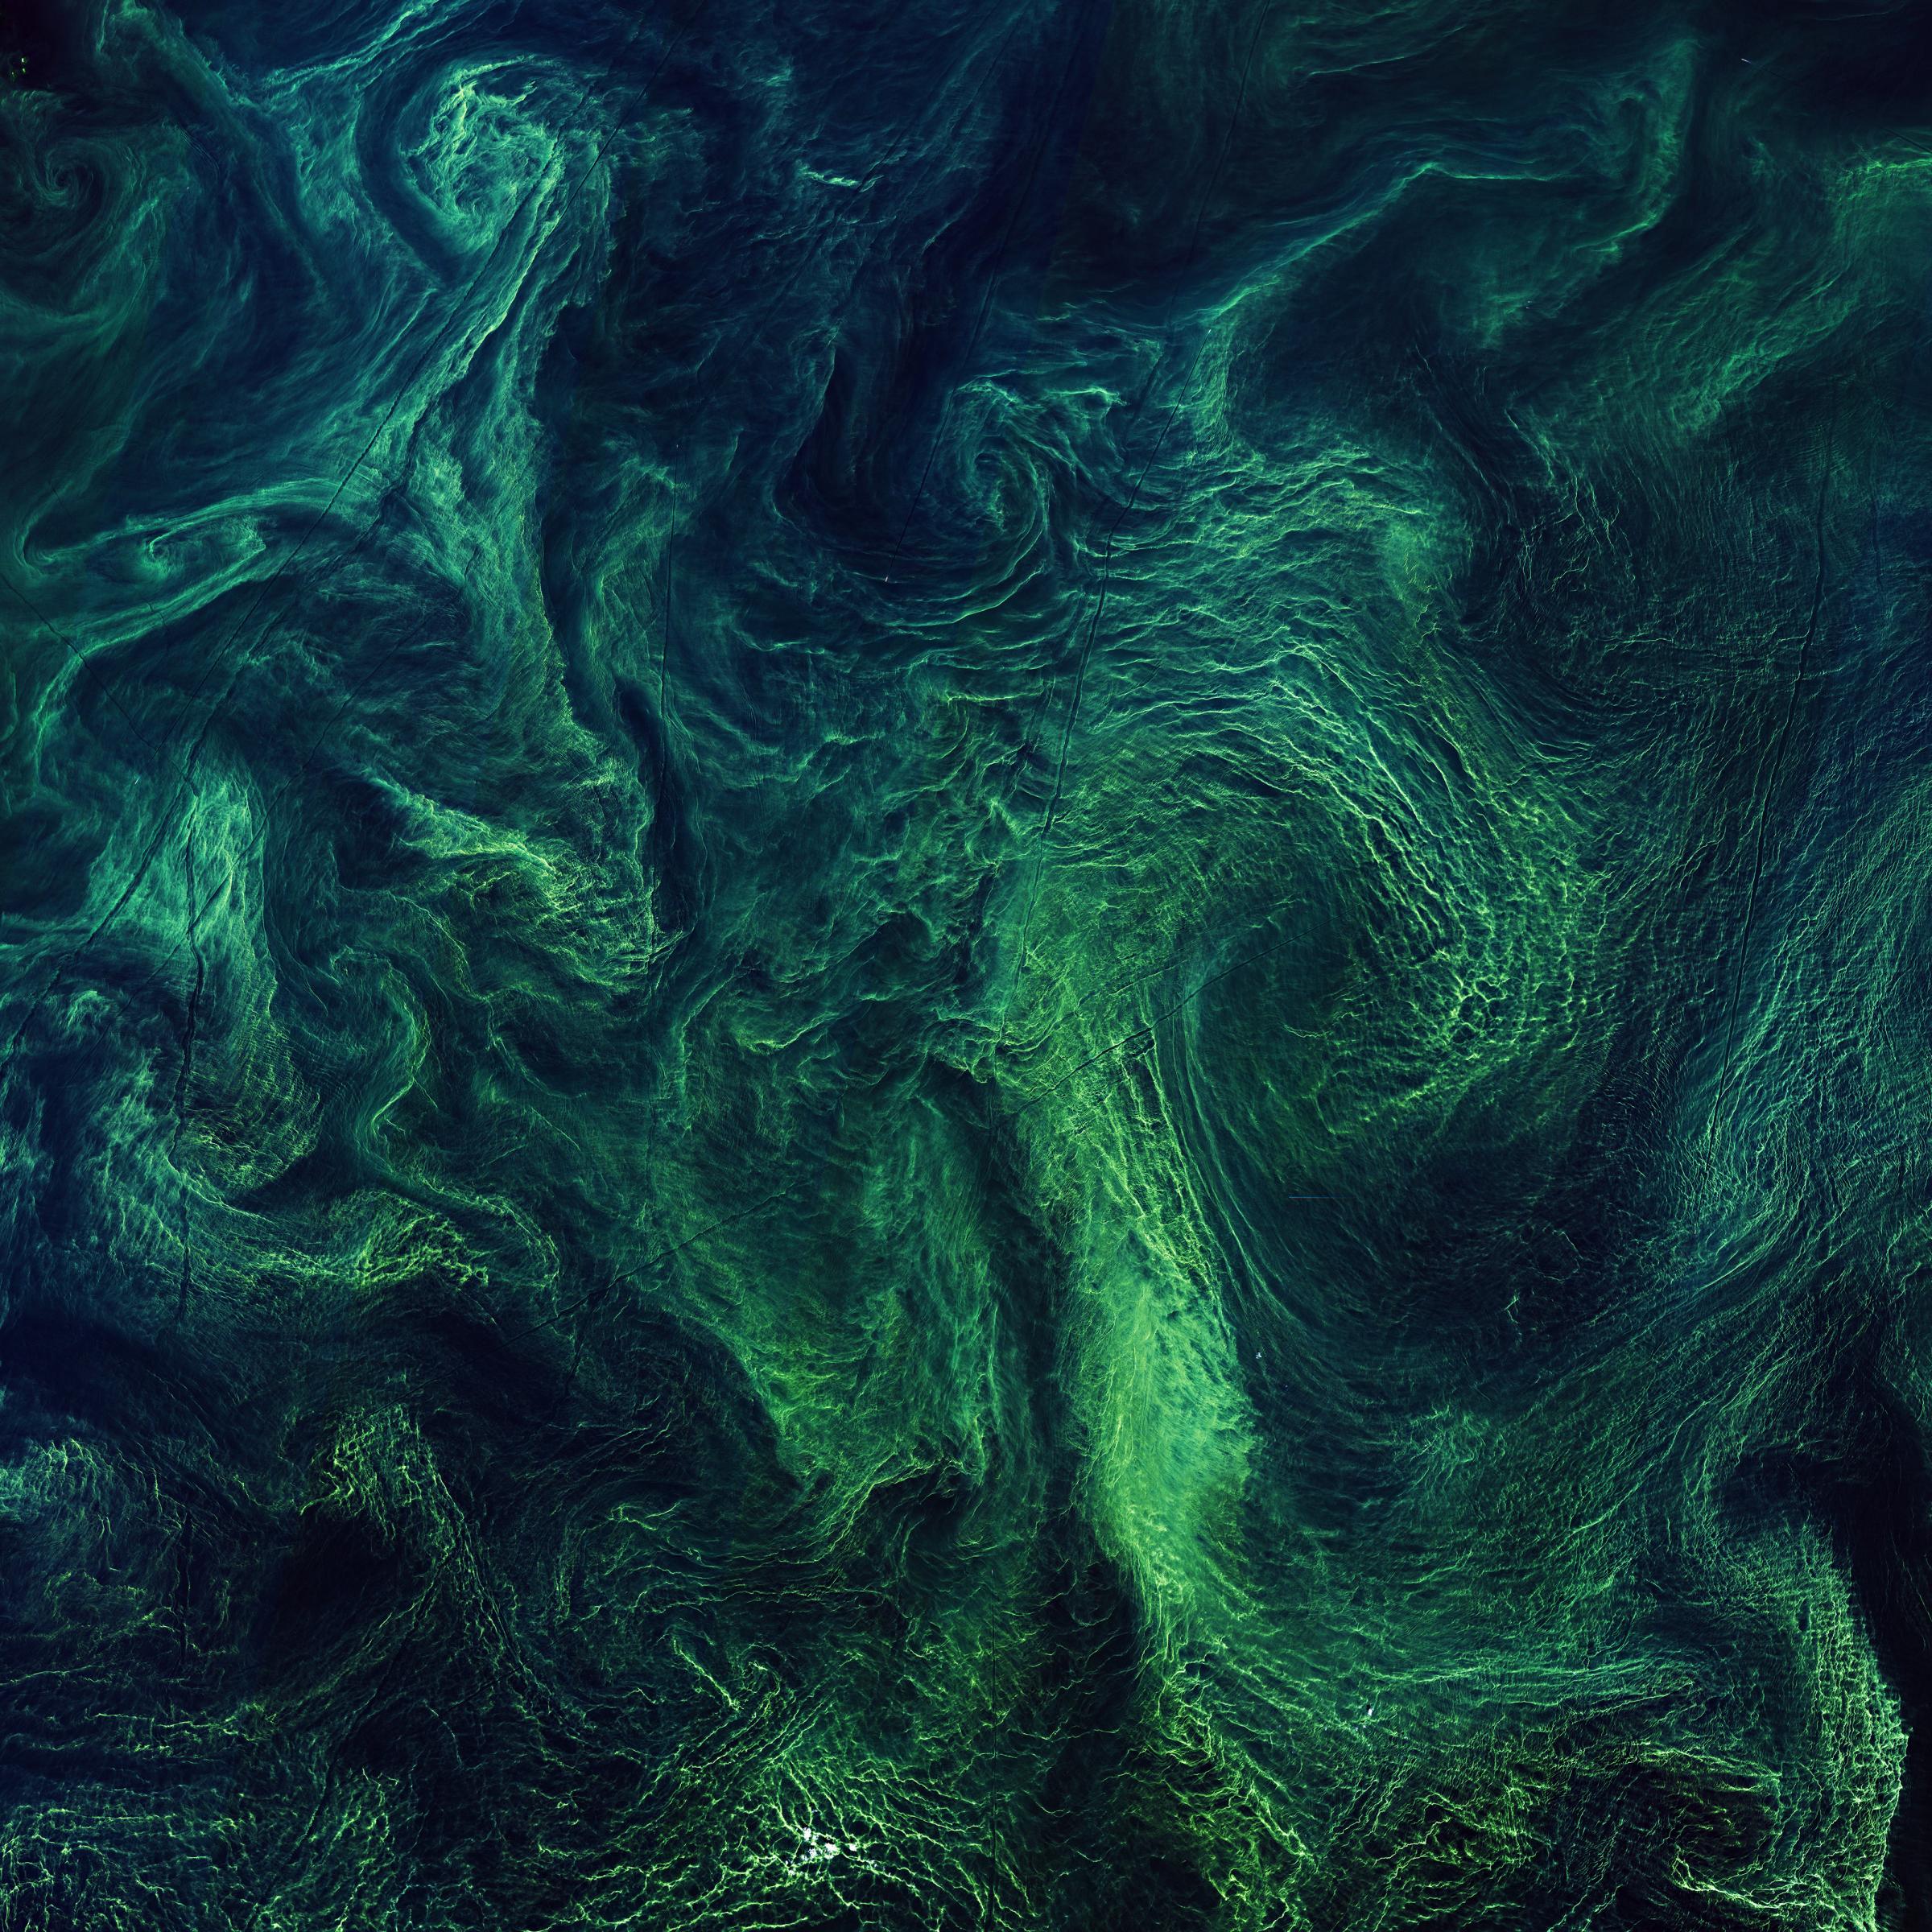 Satellitenbild; Algen bilden grüne Schlieren im blauen Wasser